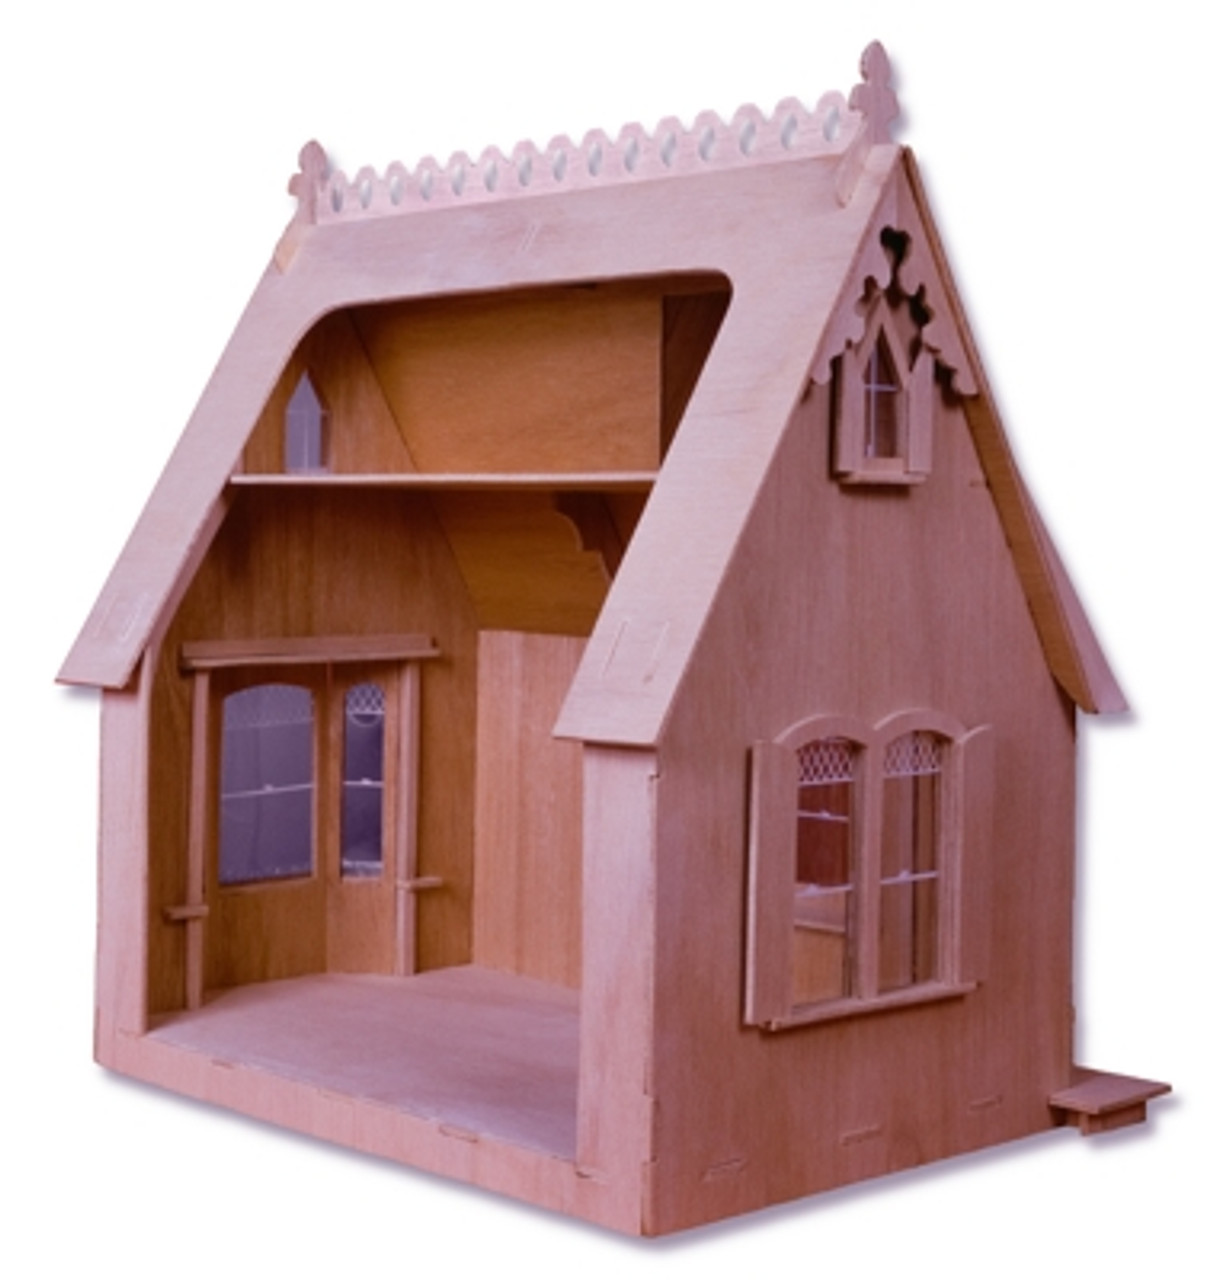 greenleaf storybook cottage dollhouse kit